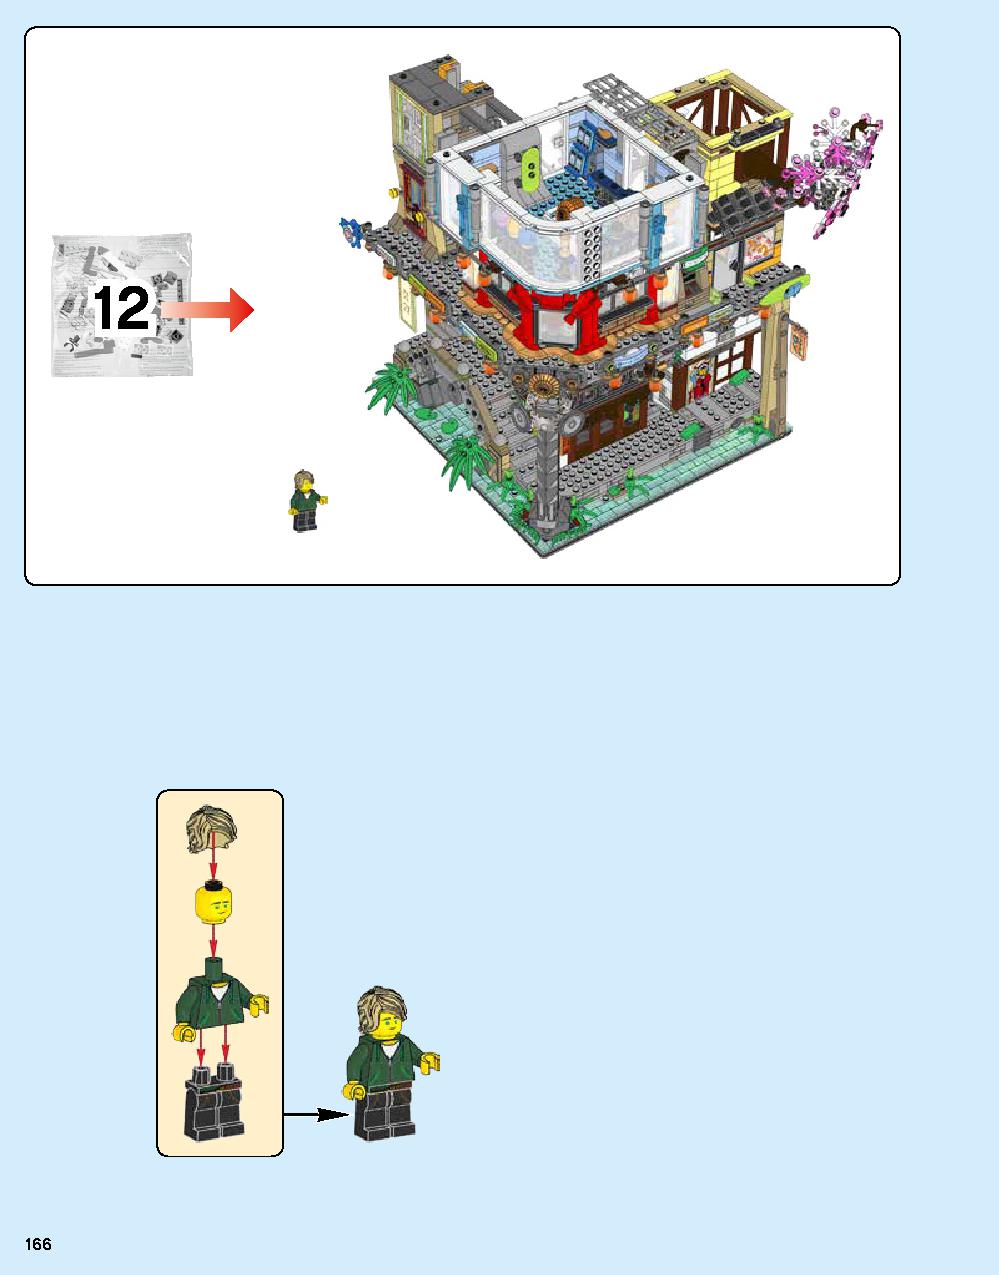 ニンジャゴー シティ 70620 レゴの商品情報 レゴの説明書・組立方法 166 page